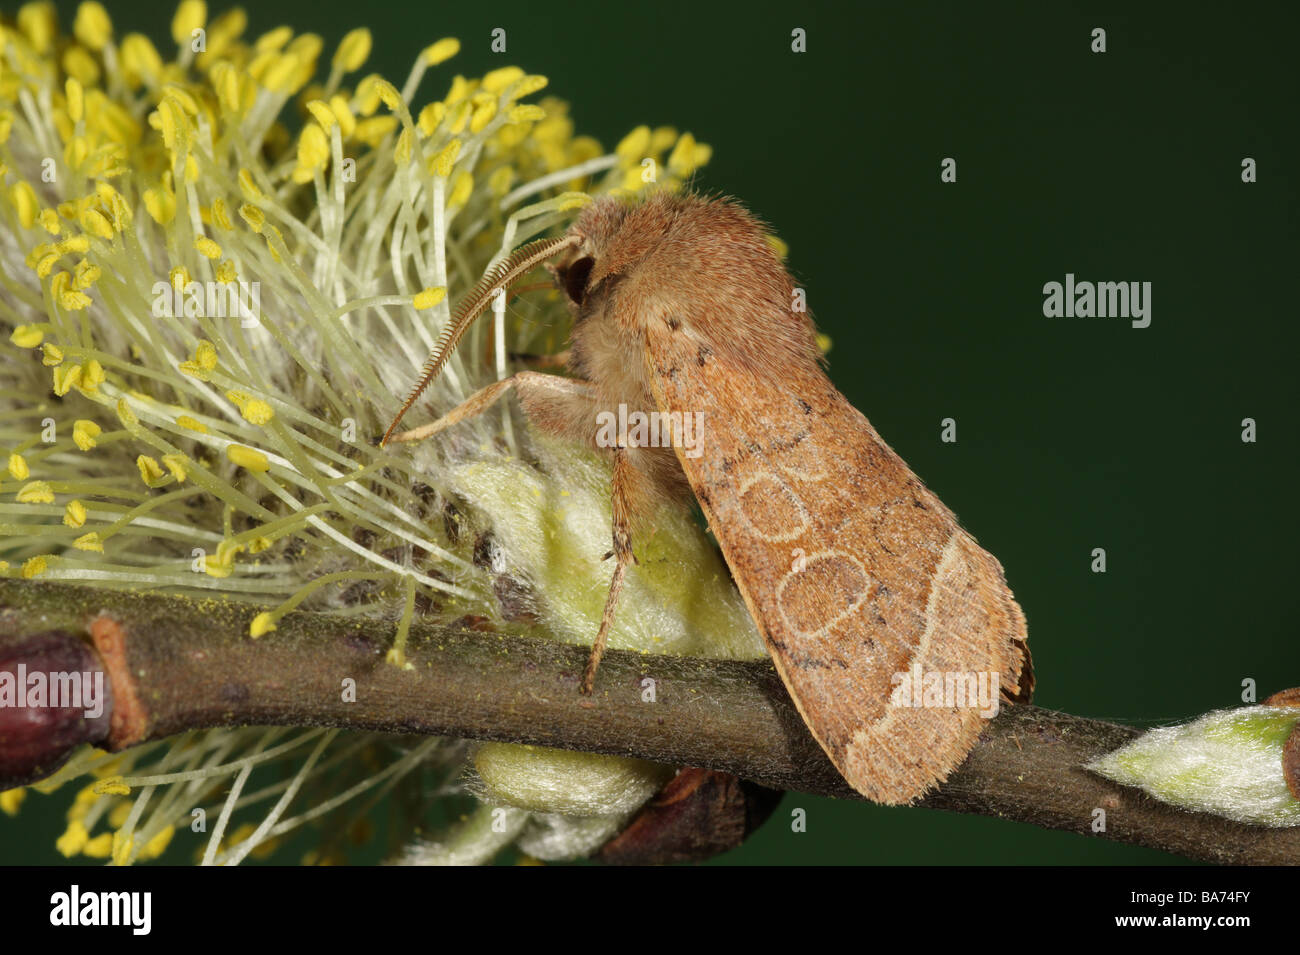 Common Quaker - Orthosia cerasi feeding on Sallow Stock Photo